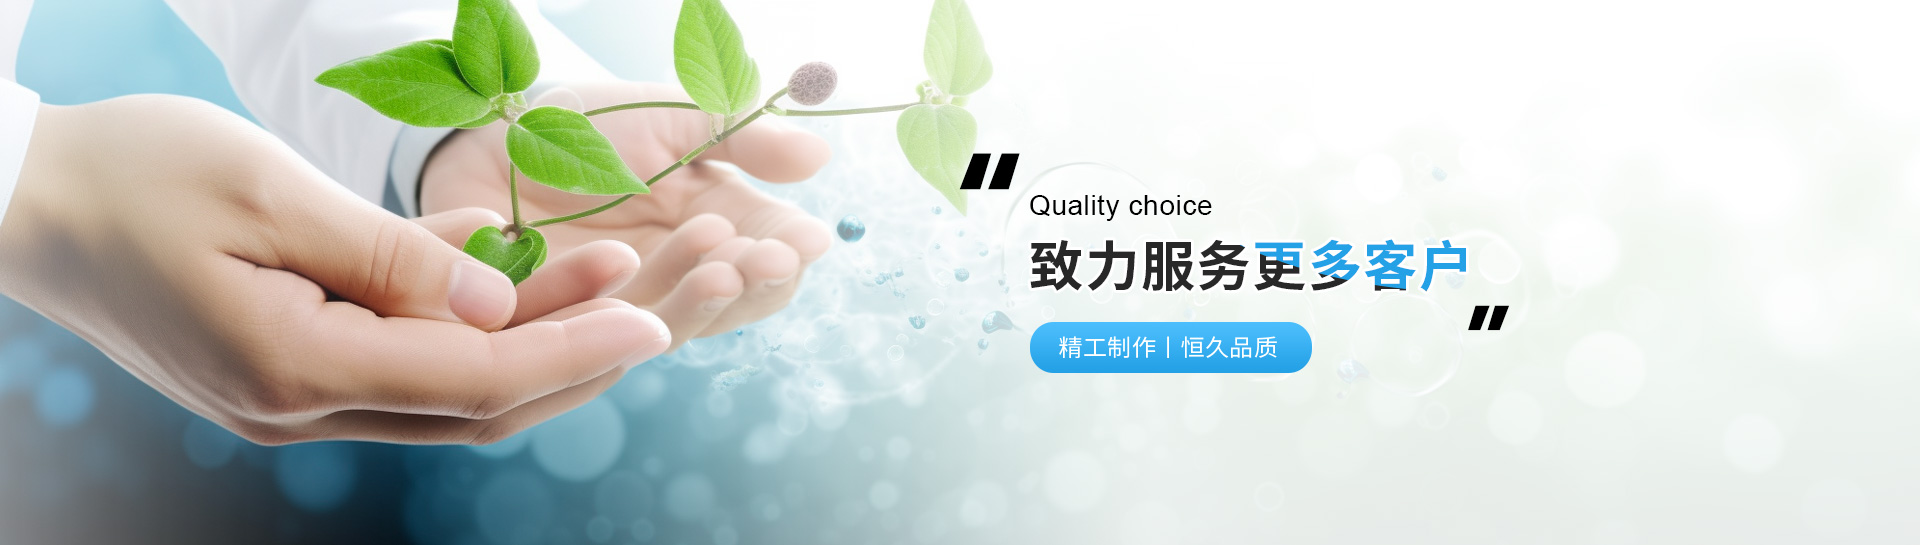 上海j9九游会化工科技发展有限公司